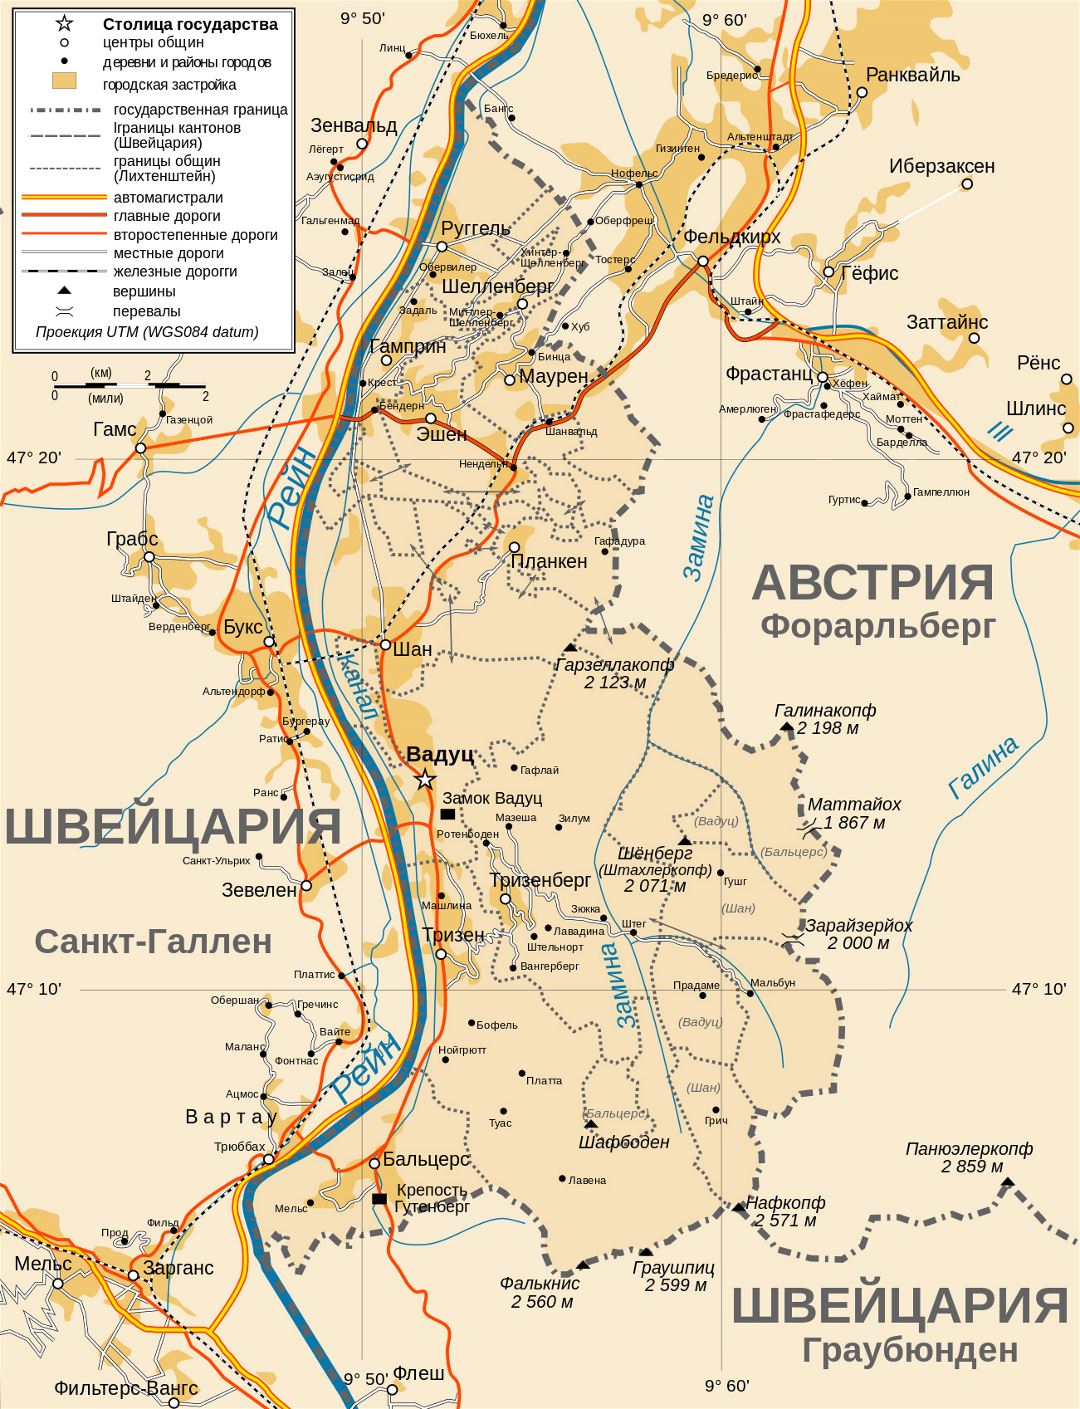 Большая детальная политическая и административная карта Лихтенштейна с дорогами, городами и деревнями на русском языке